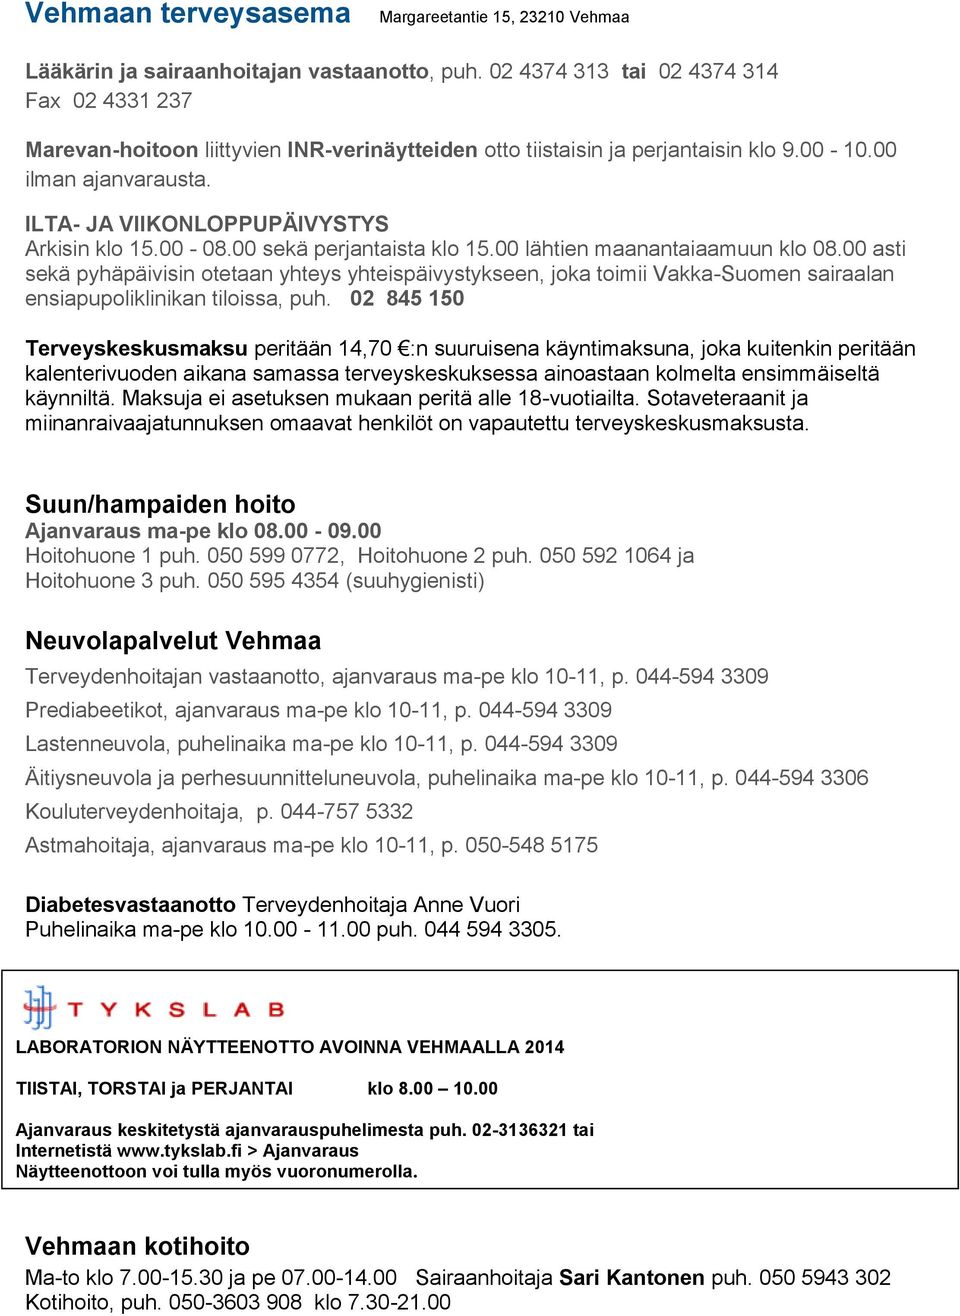 ILTA- JA VIIKONLOPPUPÄIVYSTYS Arkisin klo 15.00-08.00 sekä perjantaista klo 15.00 lähtien maanantaiaamuun klo 08.